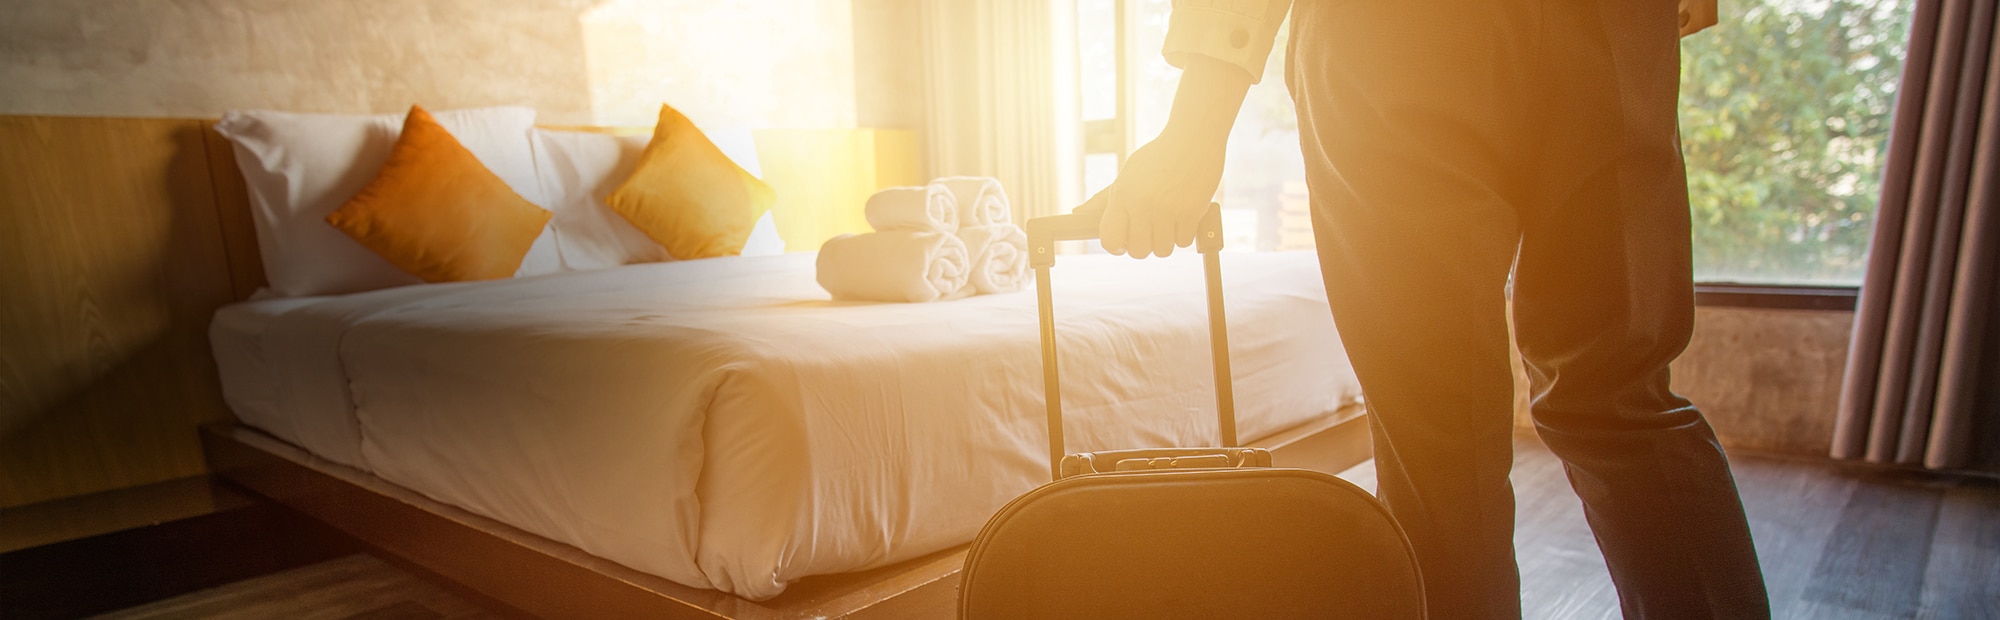 Retrouvez les tarifs et offres de l'hotel Les Voyageurs pour tous vos séjours.